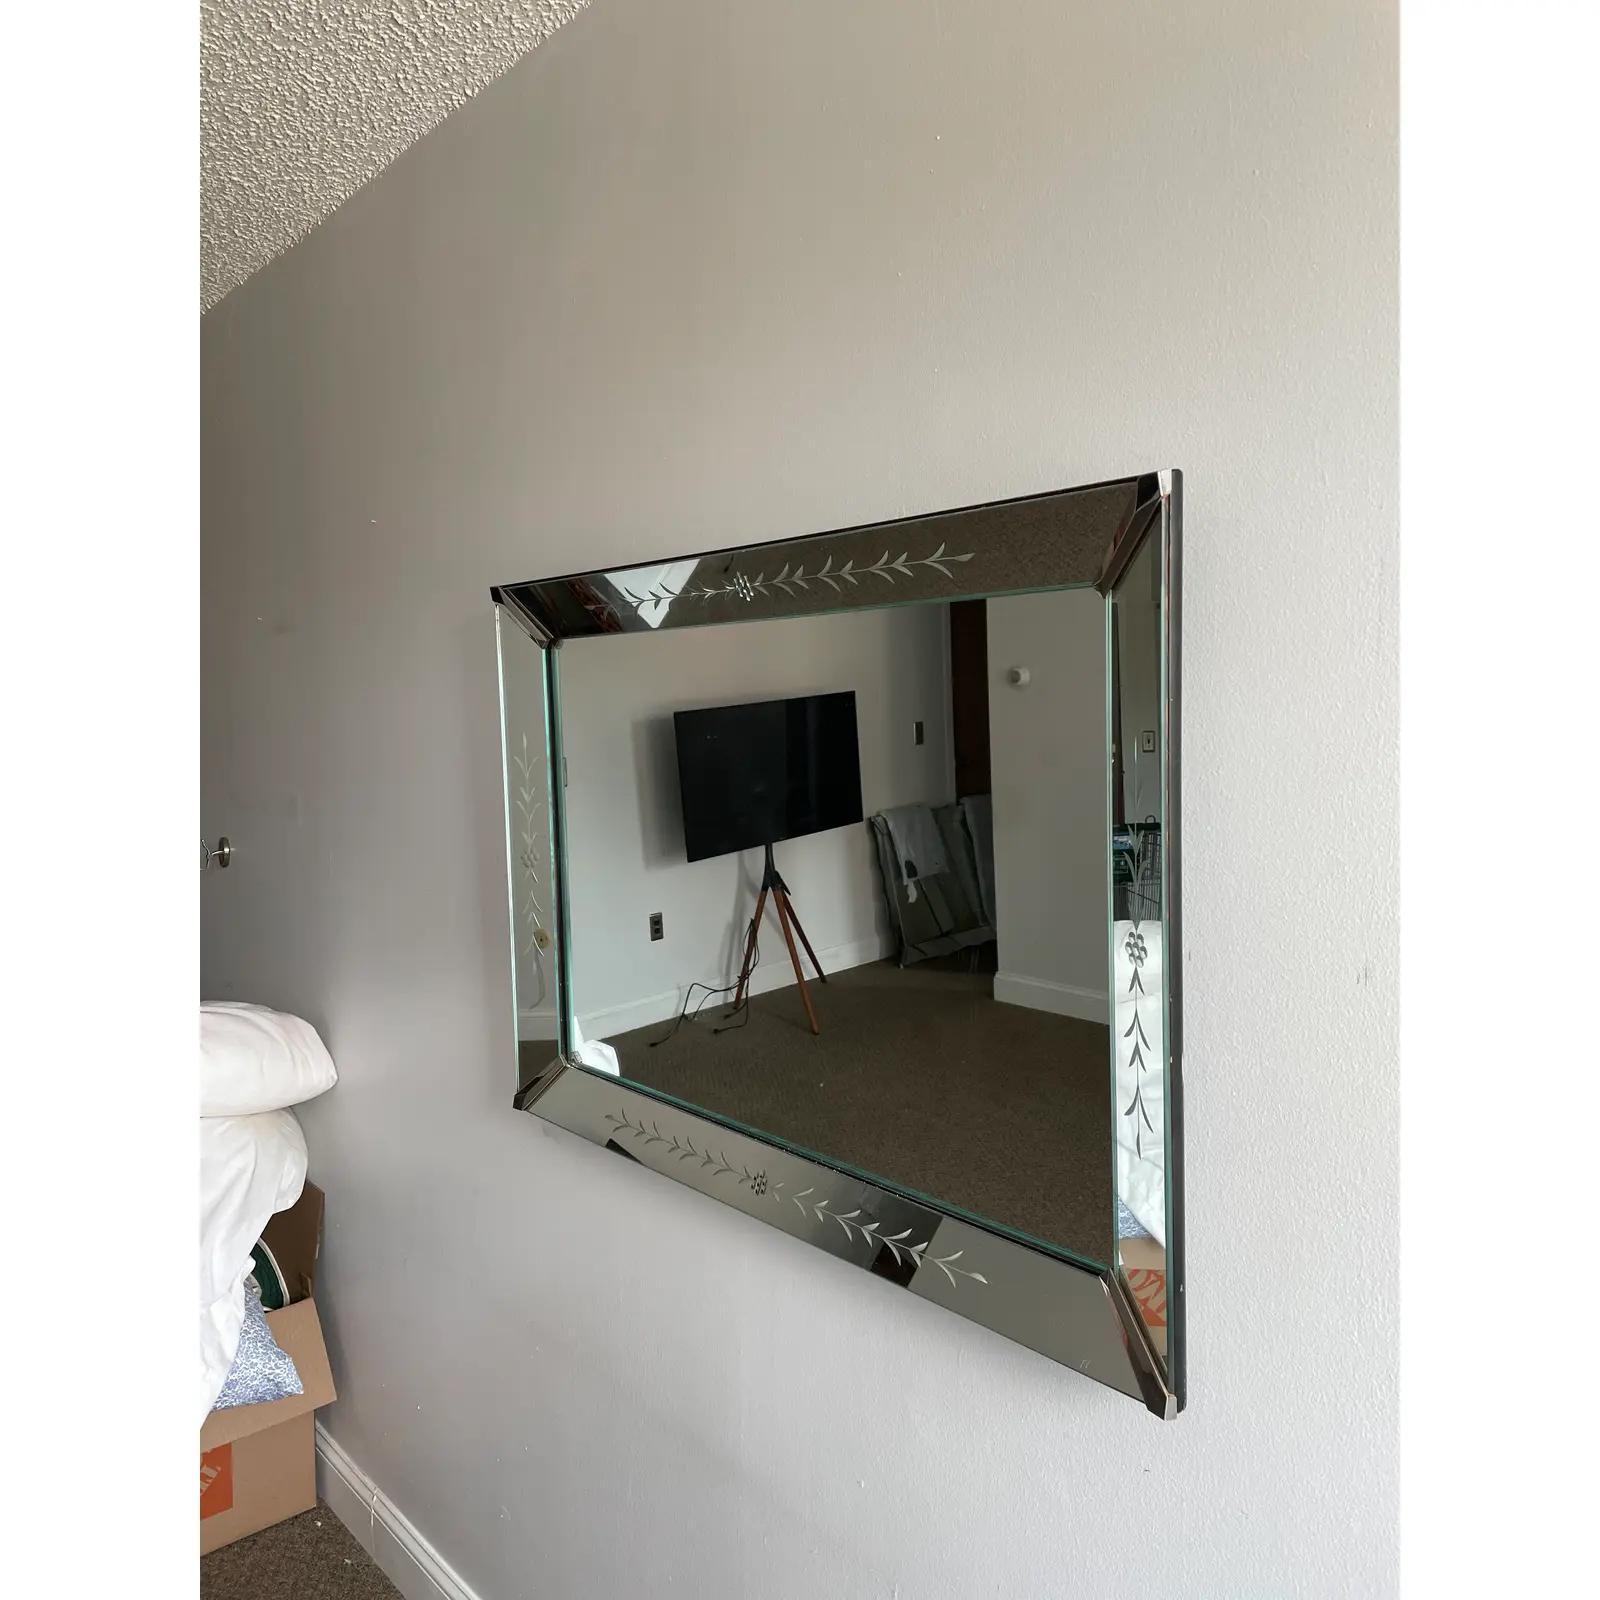 Magnifique miroir biseauté Art Déco avec de magnifiques détails gravés. Supports d'angle en métal. Livraison à domicile disponible.